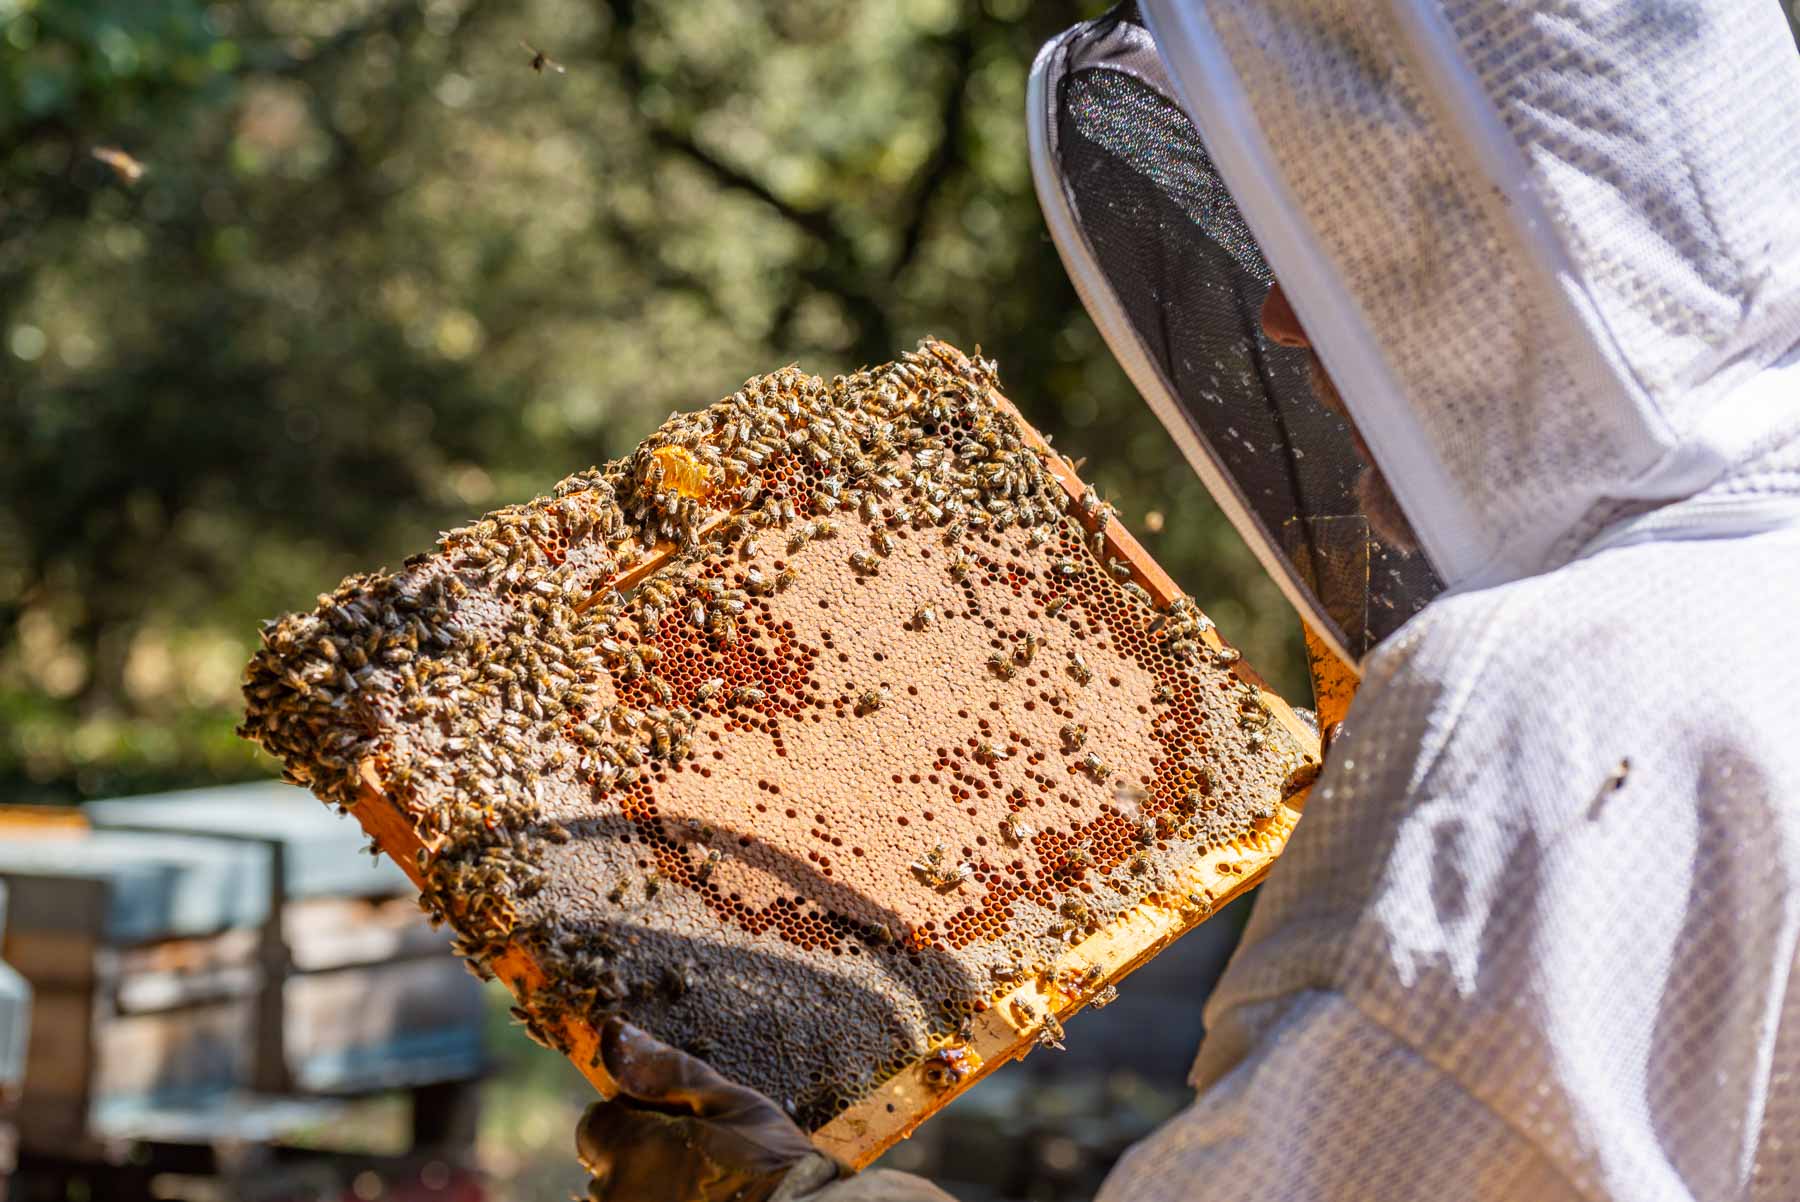 Bien choisir son matériel d'apiculture